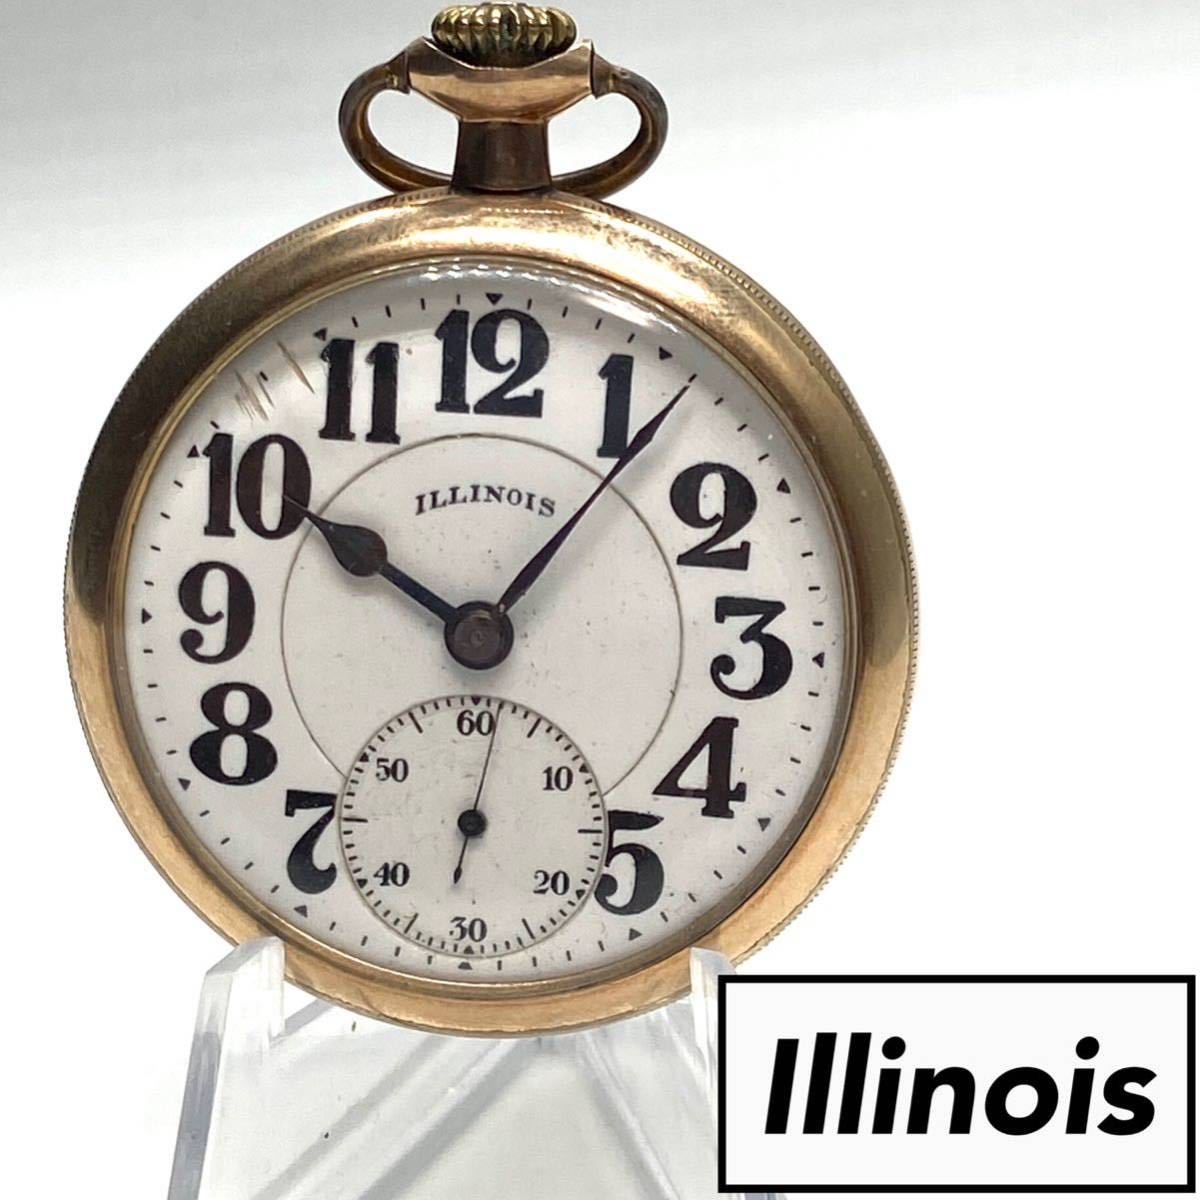 【動作良好!】Illinois bunn special イリノイ イリノイス 懐中時計 60時間稼働型 1921s 21j GF アンティーク ビンテージ ウォッチ 手巻き